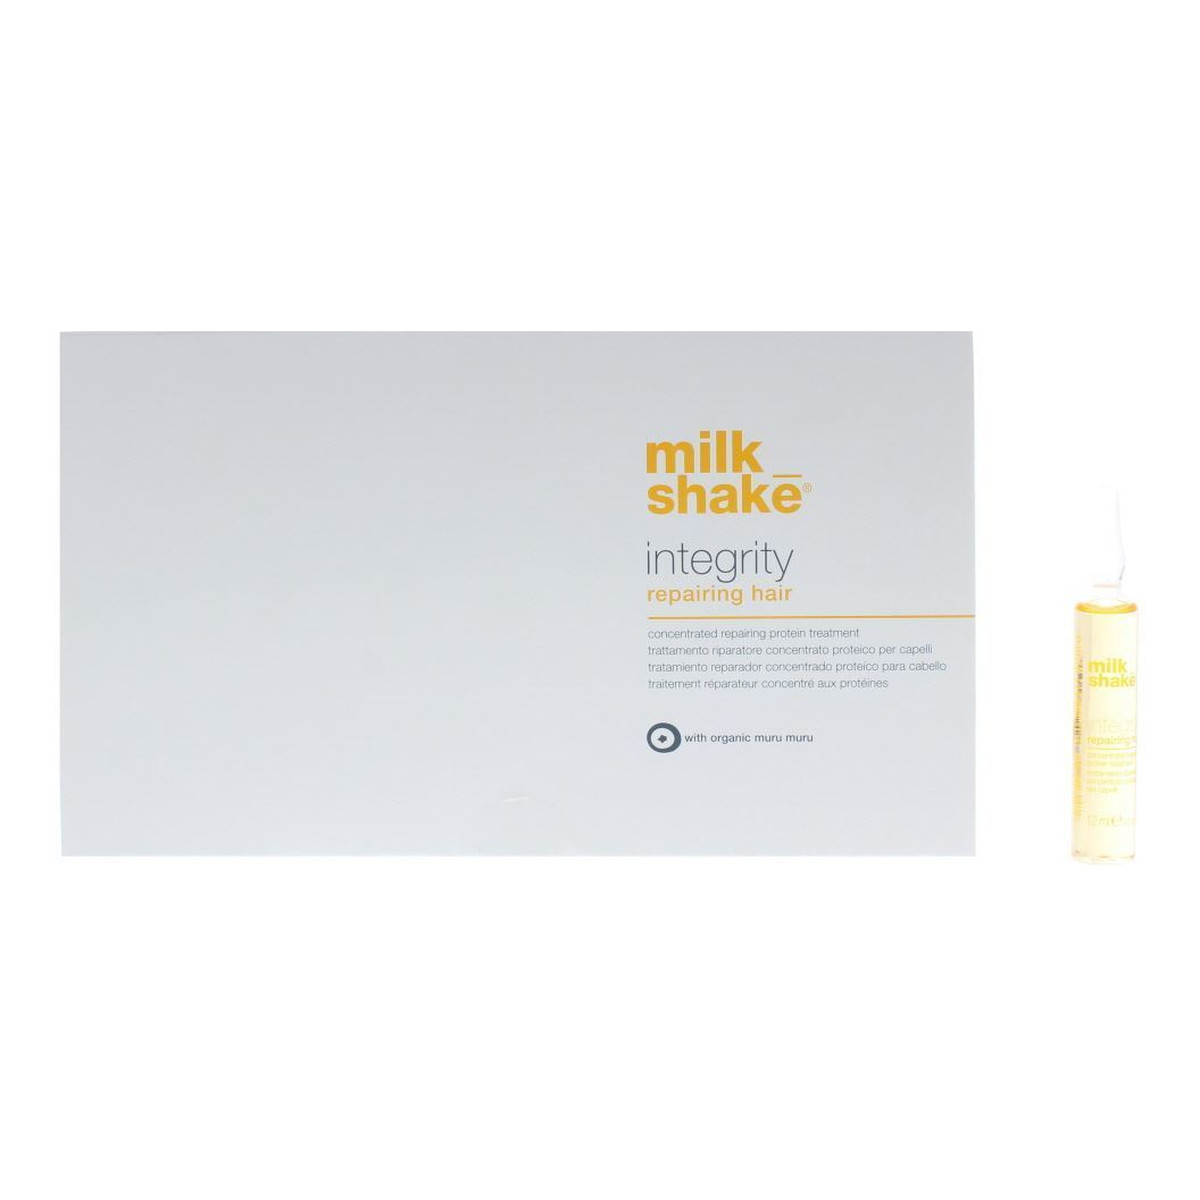 Milk Shake Integrity Repairing Hair kuracja pielęgnacyjna do włosów 8x12ml 96ml